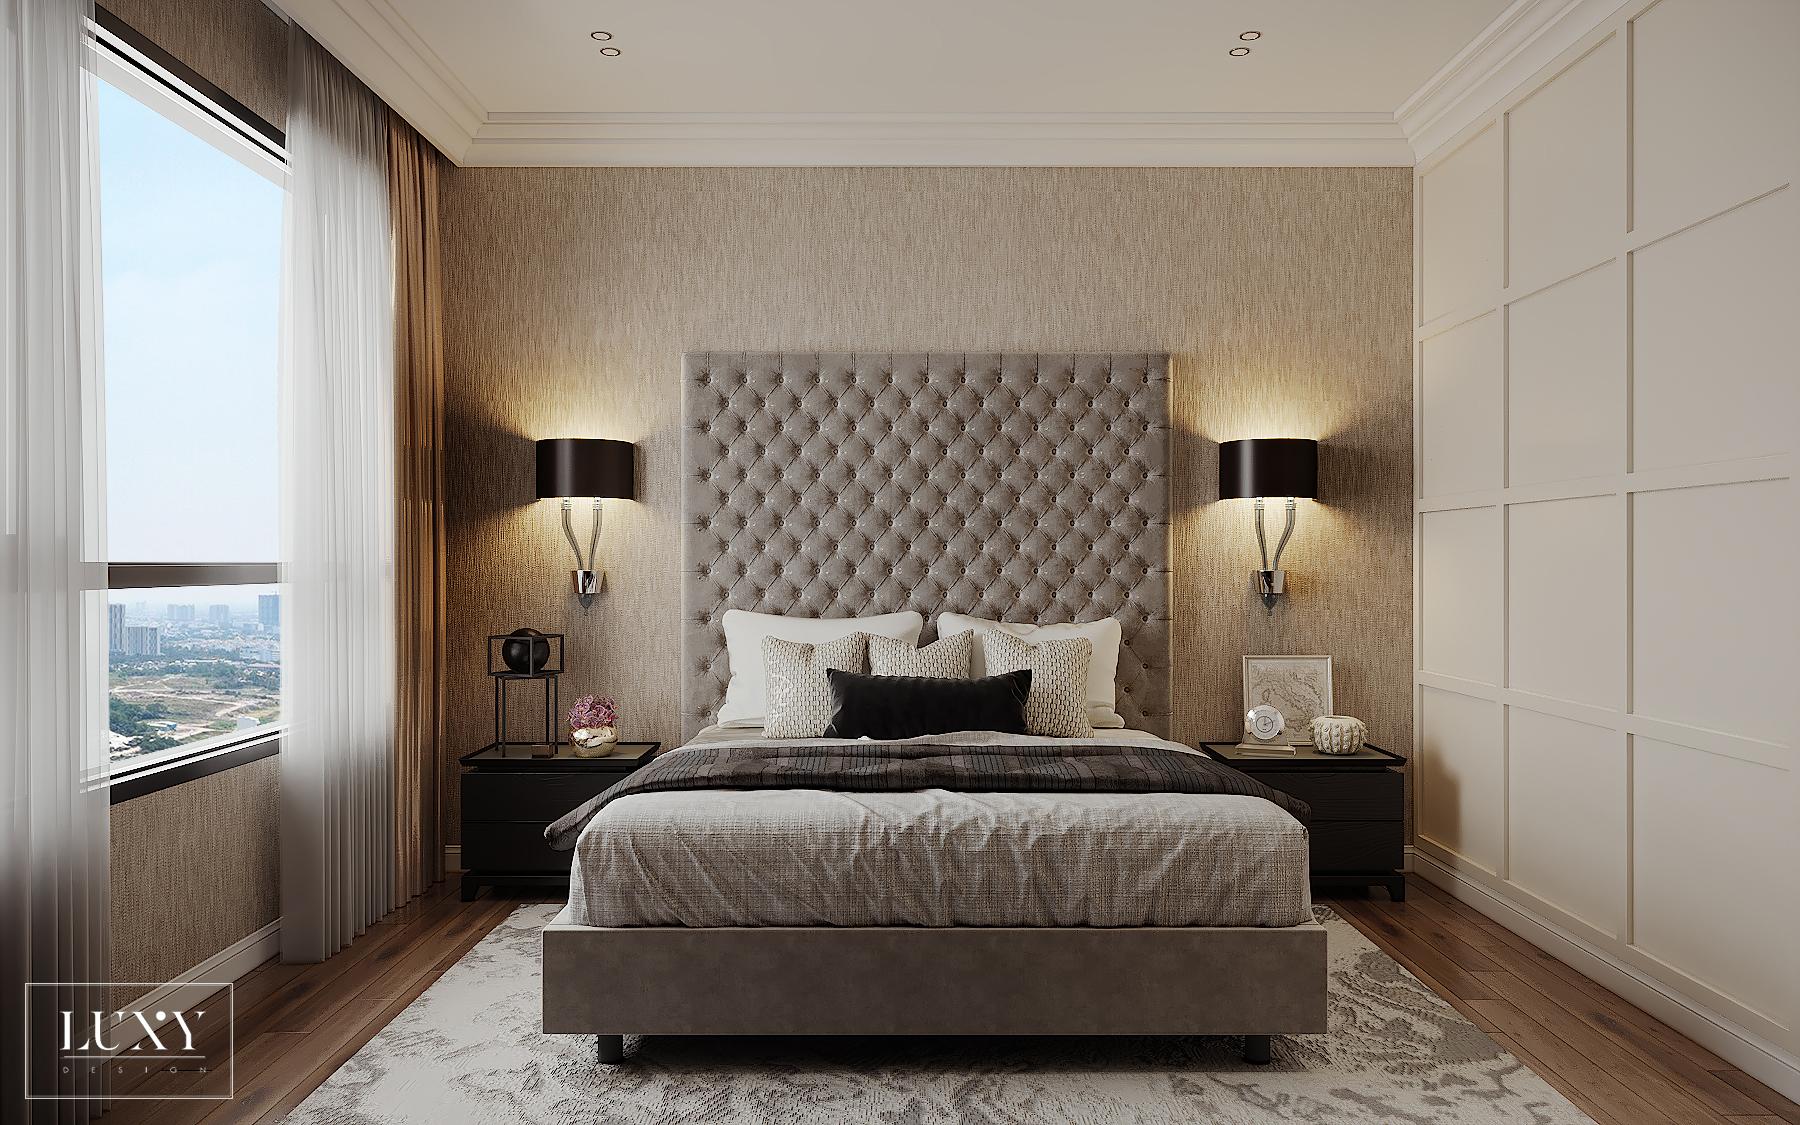 Phòng ngủ đơn giản mà nổi bật với cách sắp xếp đặc trưng là đối xứng